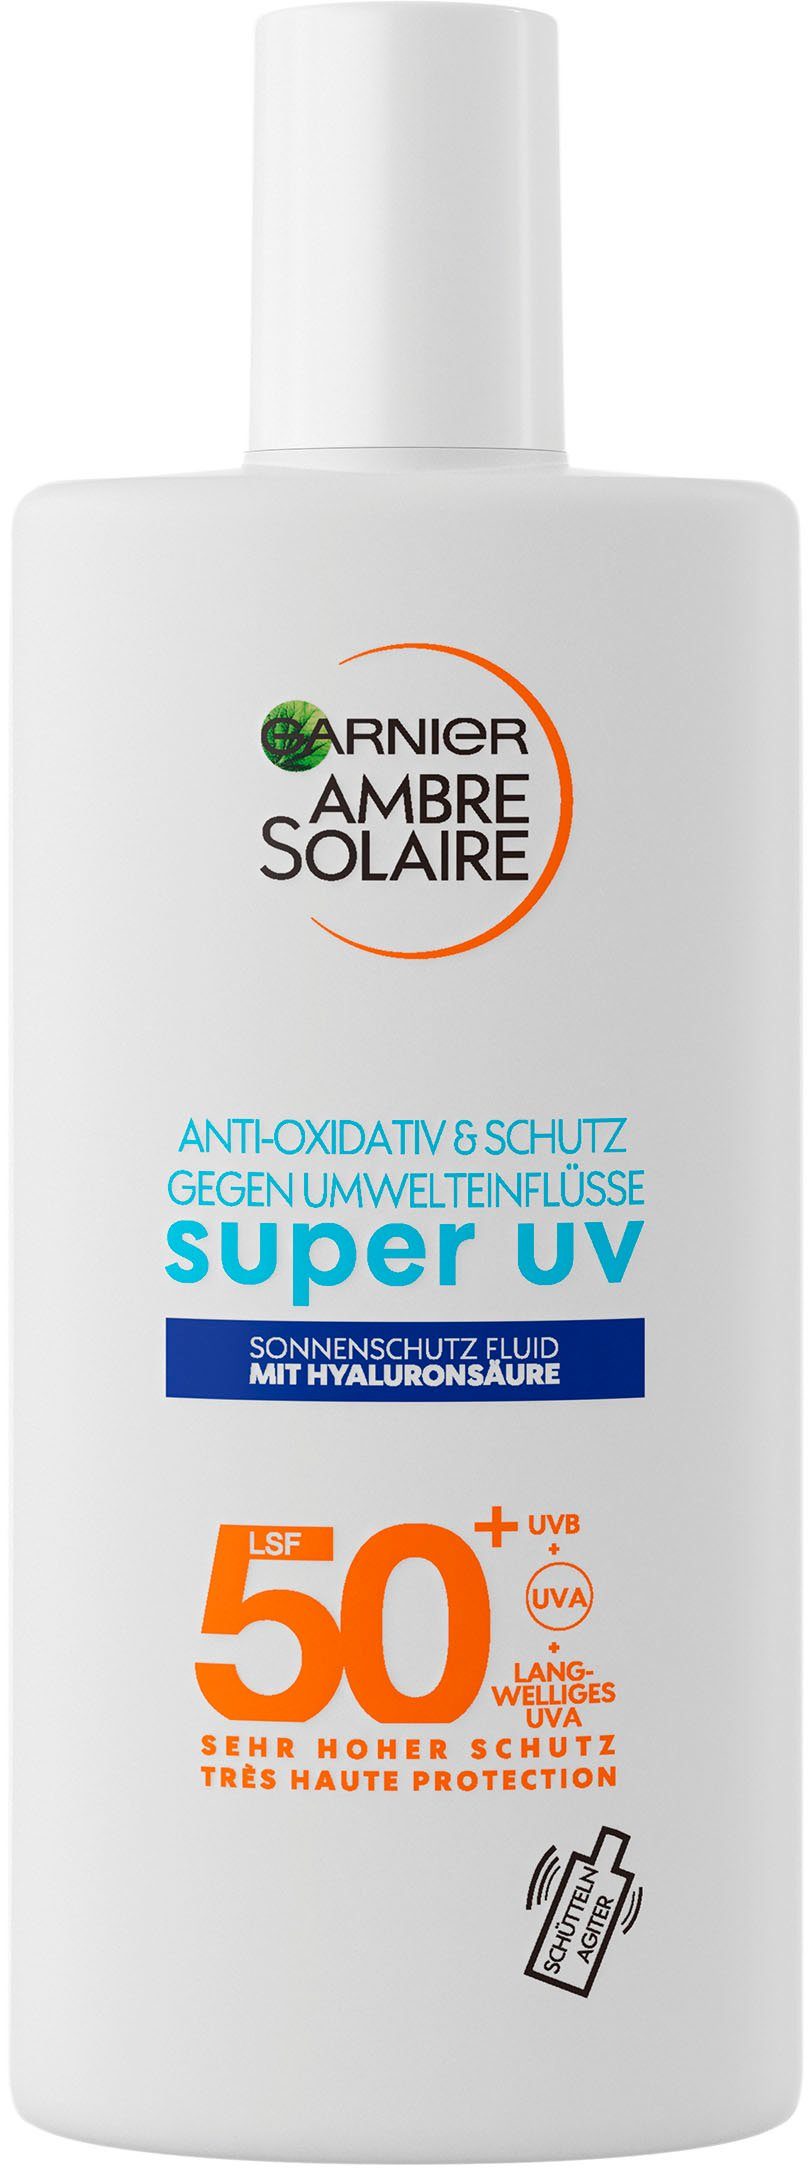 Ambre expert+, 50 Sonnenschutzfluid Sensitive Solaire LSF mit Hyaluronsäure GARNIER